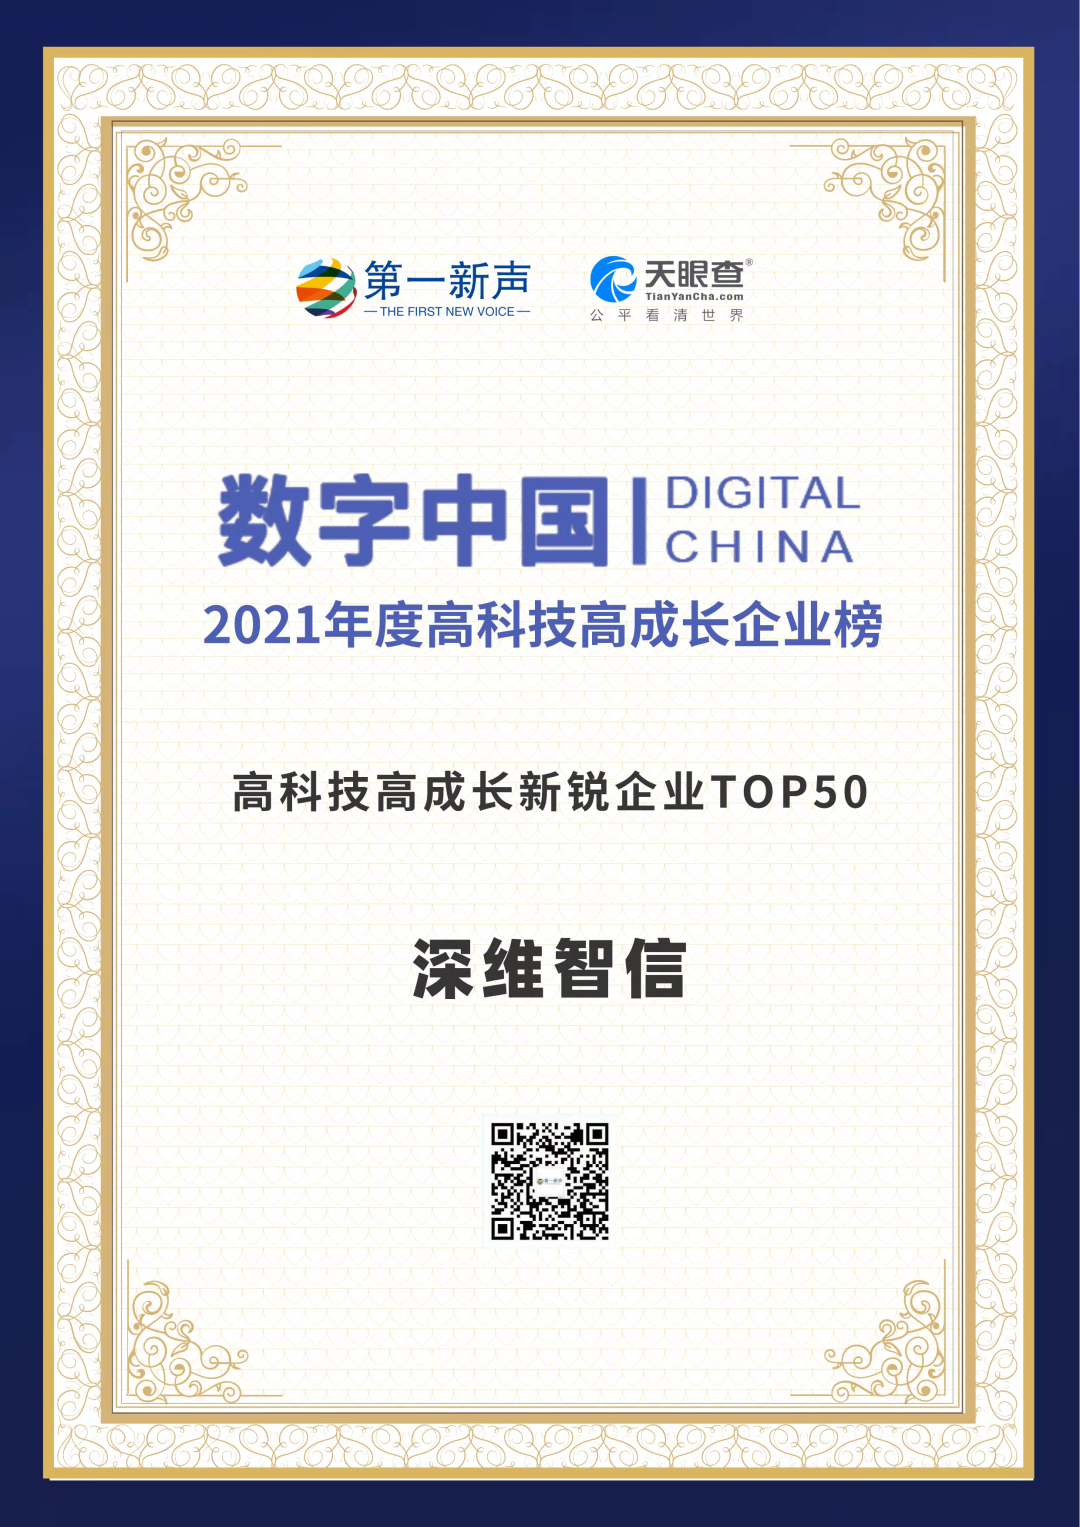 再获殊荣！深维智信荣登 “数字中国 – 2021年度高科技高成长企业系列榜单”！插图1